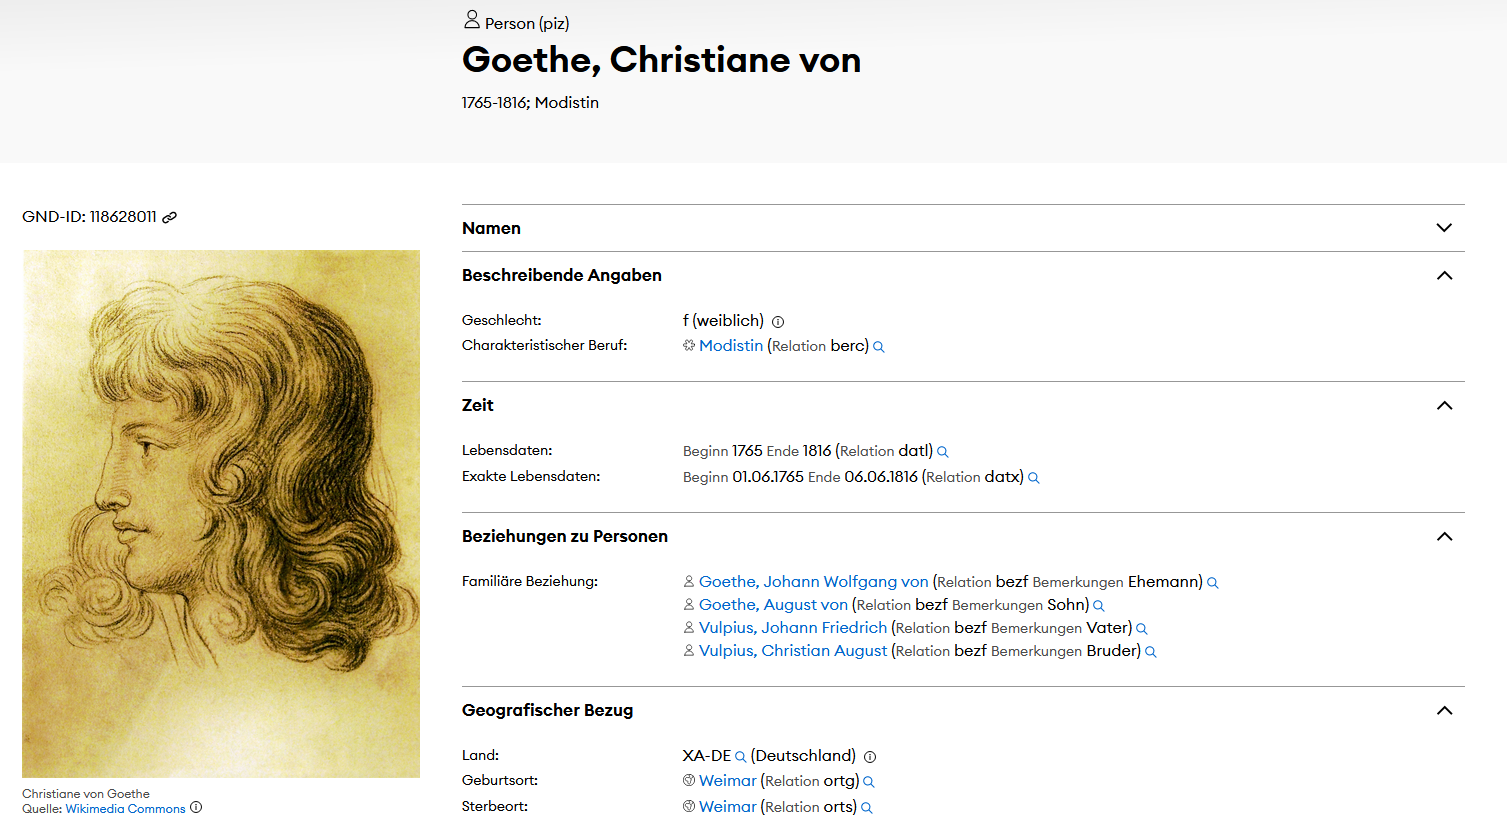 Metadaten von Christiane von Goethe auf einem Faktenblatt.